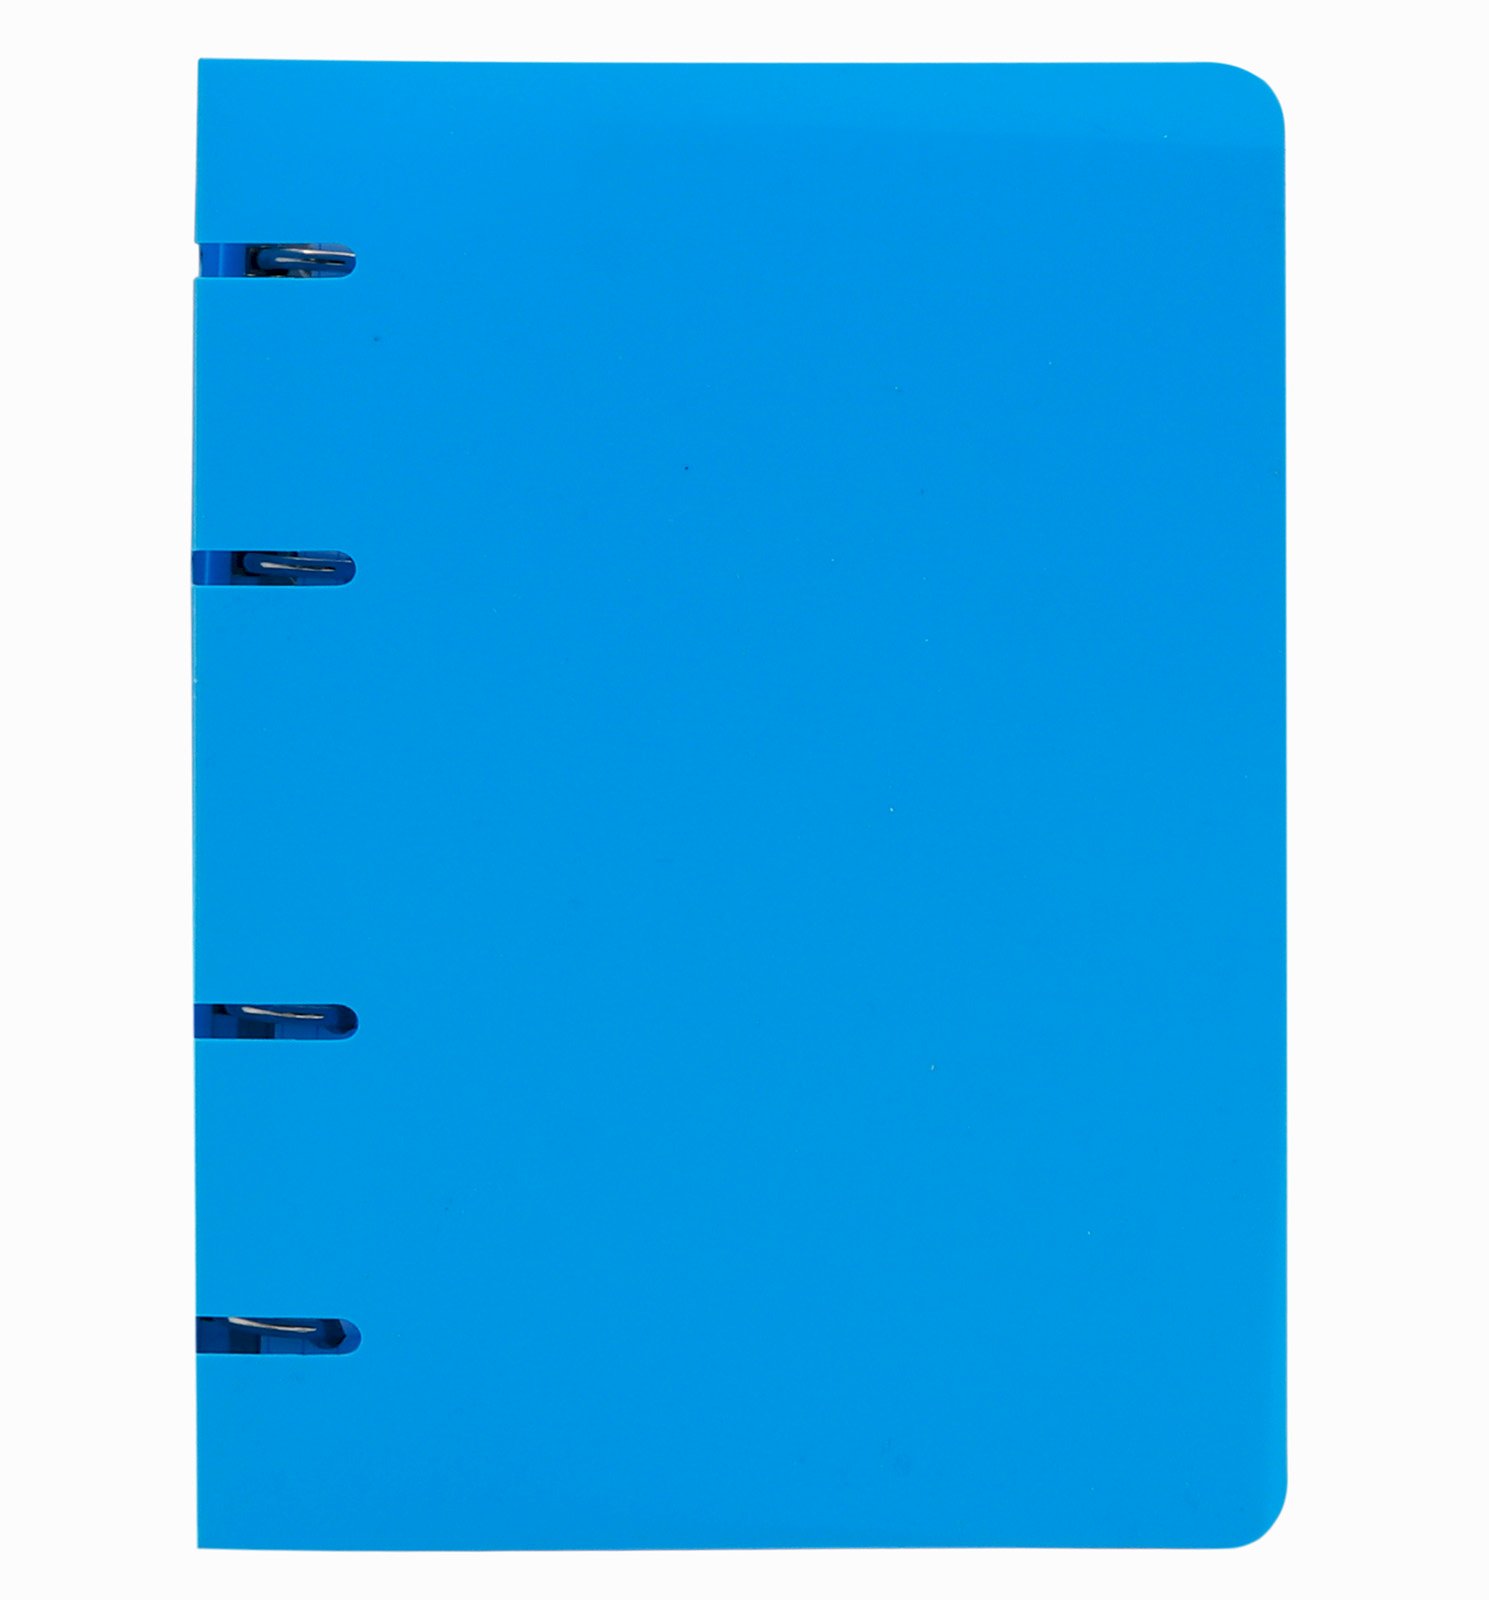 Тетрадь на кольцах ПандаРог оснащена обложкой из гибкого пластика голубого цвета. Сменный блок тетради включает в себя 80 листов в клетку плотностью 60 г/м2. Предназначена для ведения записей, используется в учебных заведениях, офисах, дома. Разъемные кольца обеспечивают возможность замены листов, ведения конспектов по нескольким предметам или офисным задачам. Тетрадь совместима с перфорированными разделителями для тетрадей соответствующего формата. Формат А5 позволяет переносить тетрадь в сумке, рюкзаке или портфеле. Скругленные углы тетради предохраняют внутреннюю подкладку сумки от повреждений. Размер тетради 16х21,5 см. Ширина корешка 25 мм.